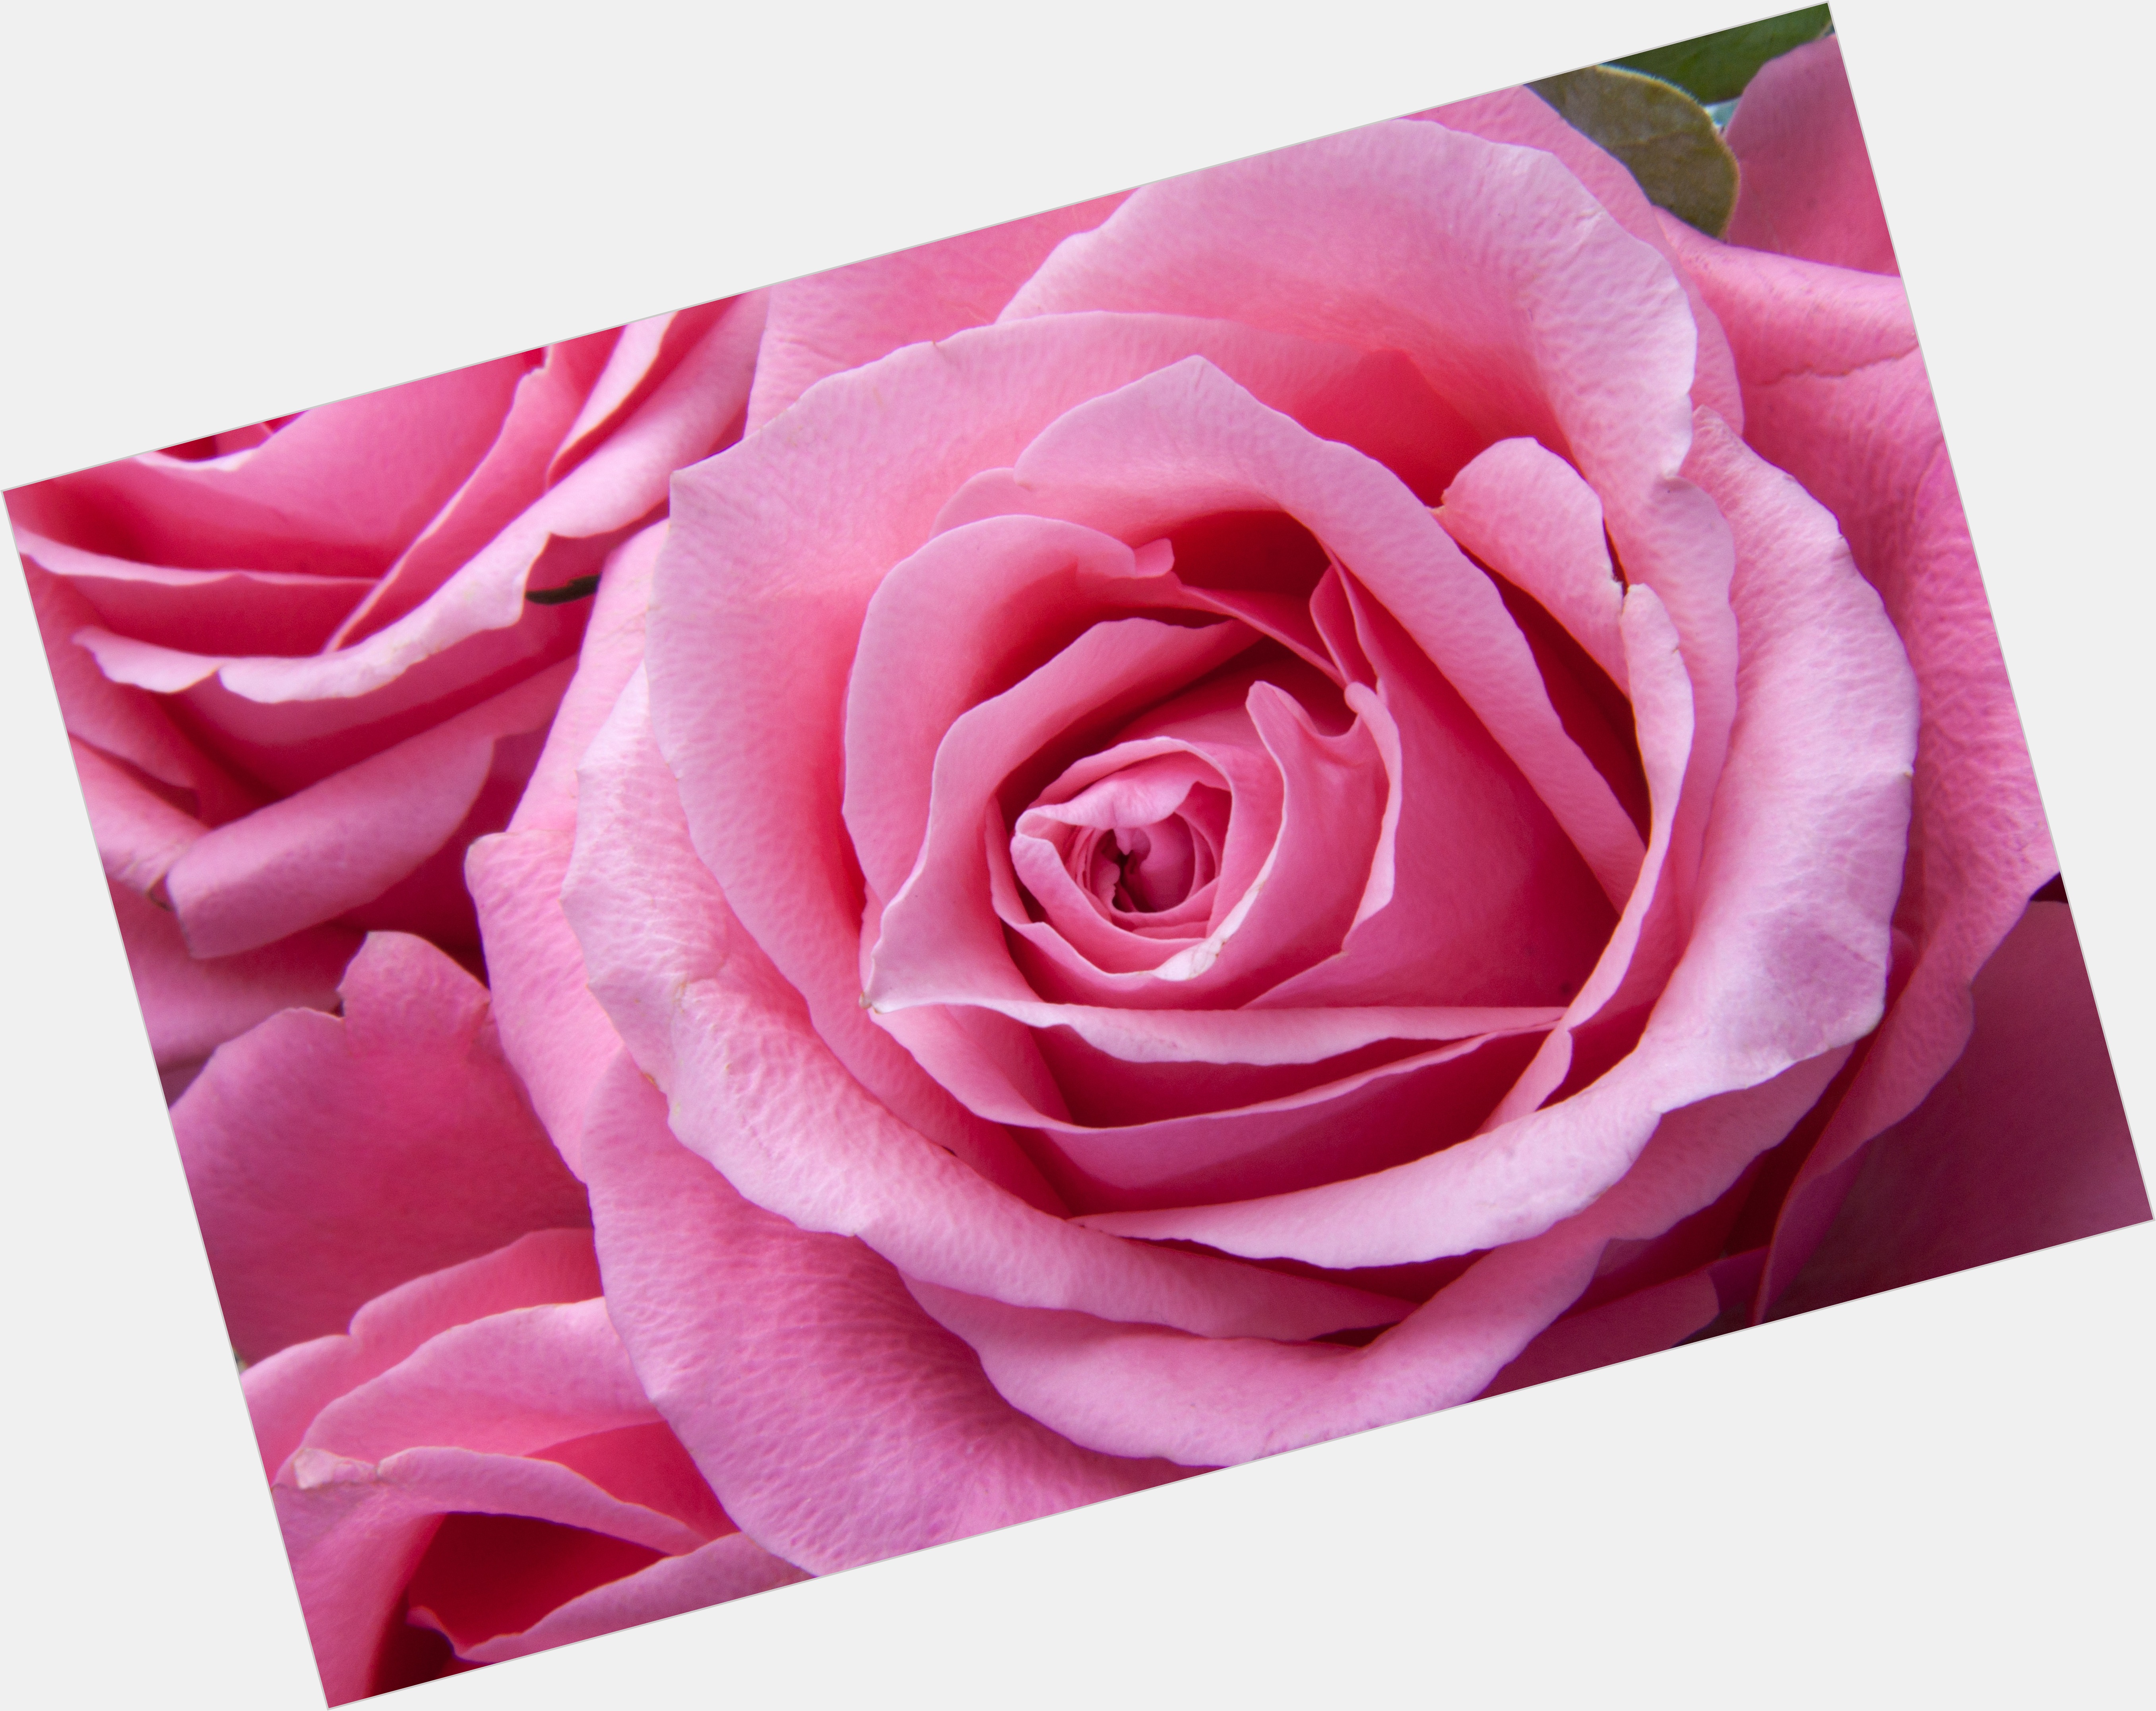 Fleur Rose new pic 1.jpg